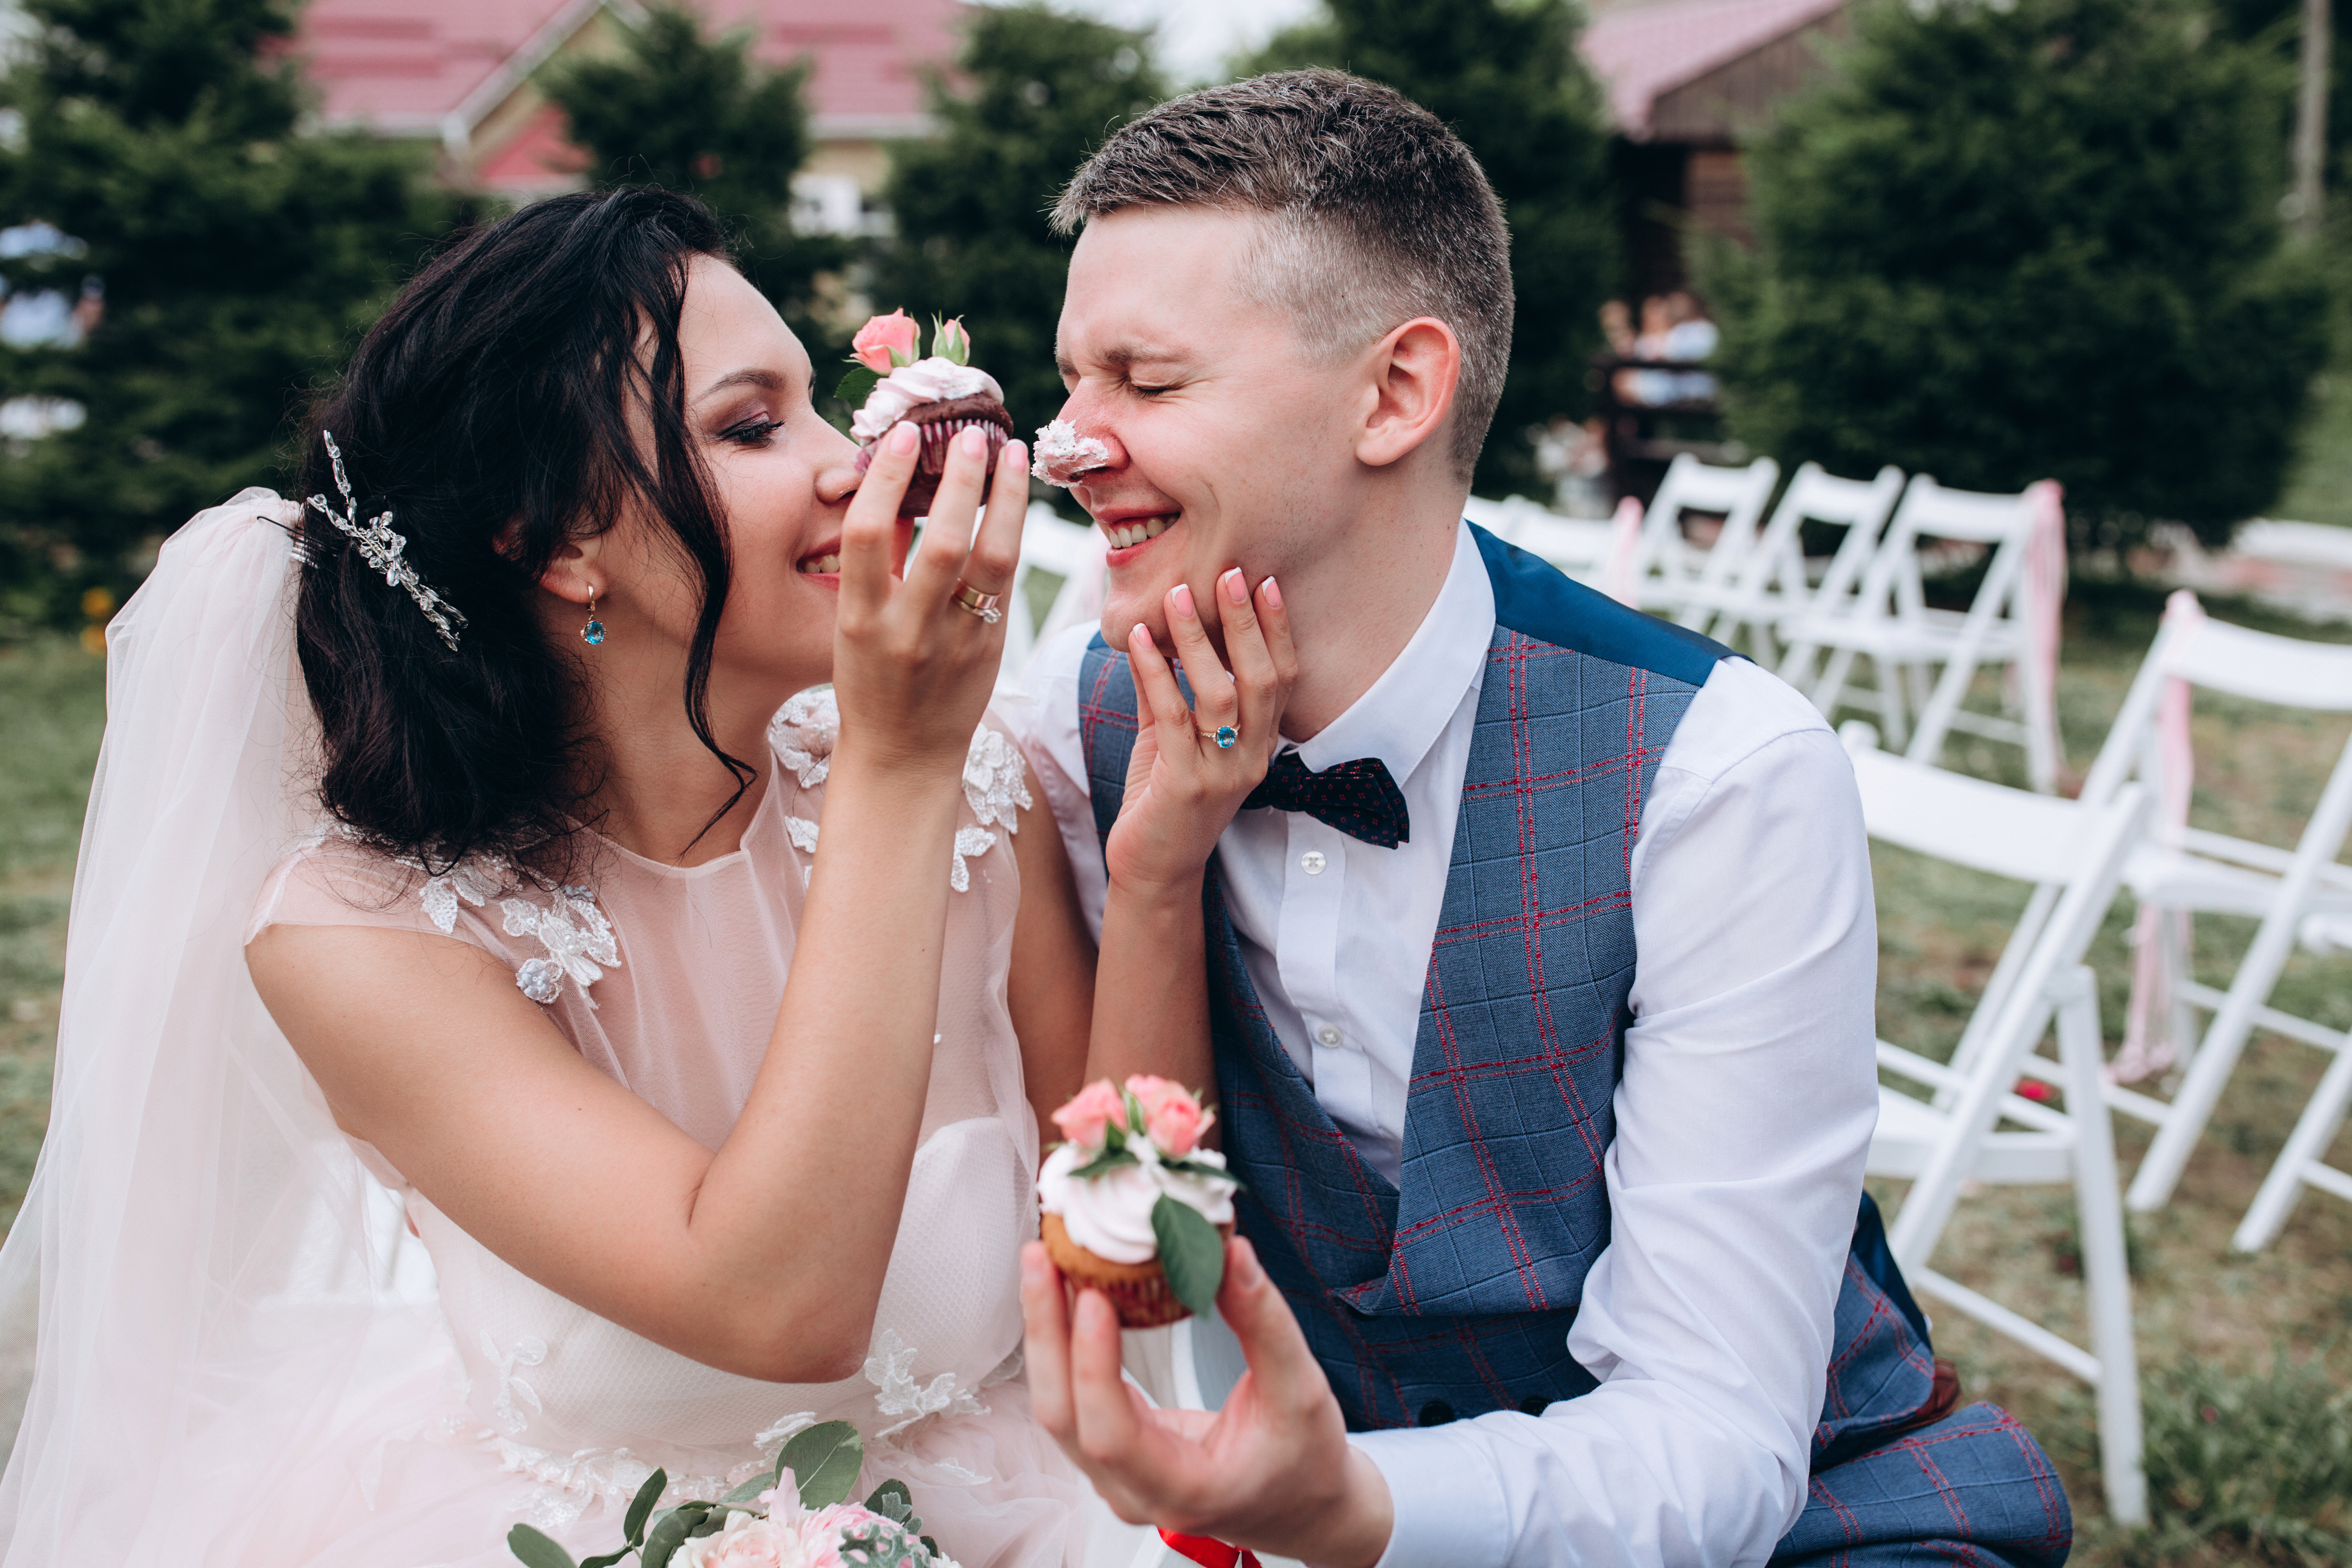 Novia colocando glaseado en la nariz del novio | Fuente: Shutterstock